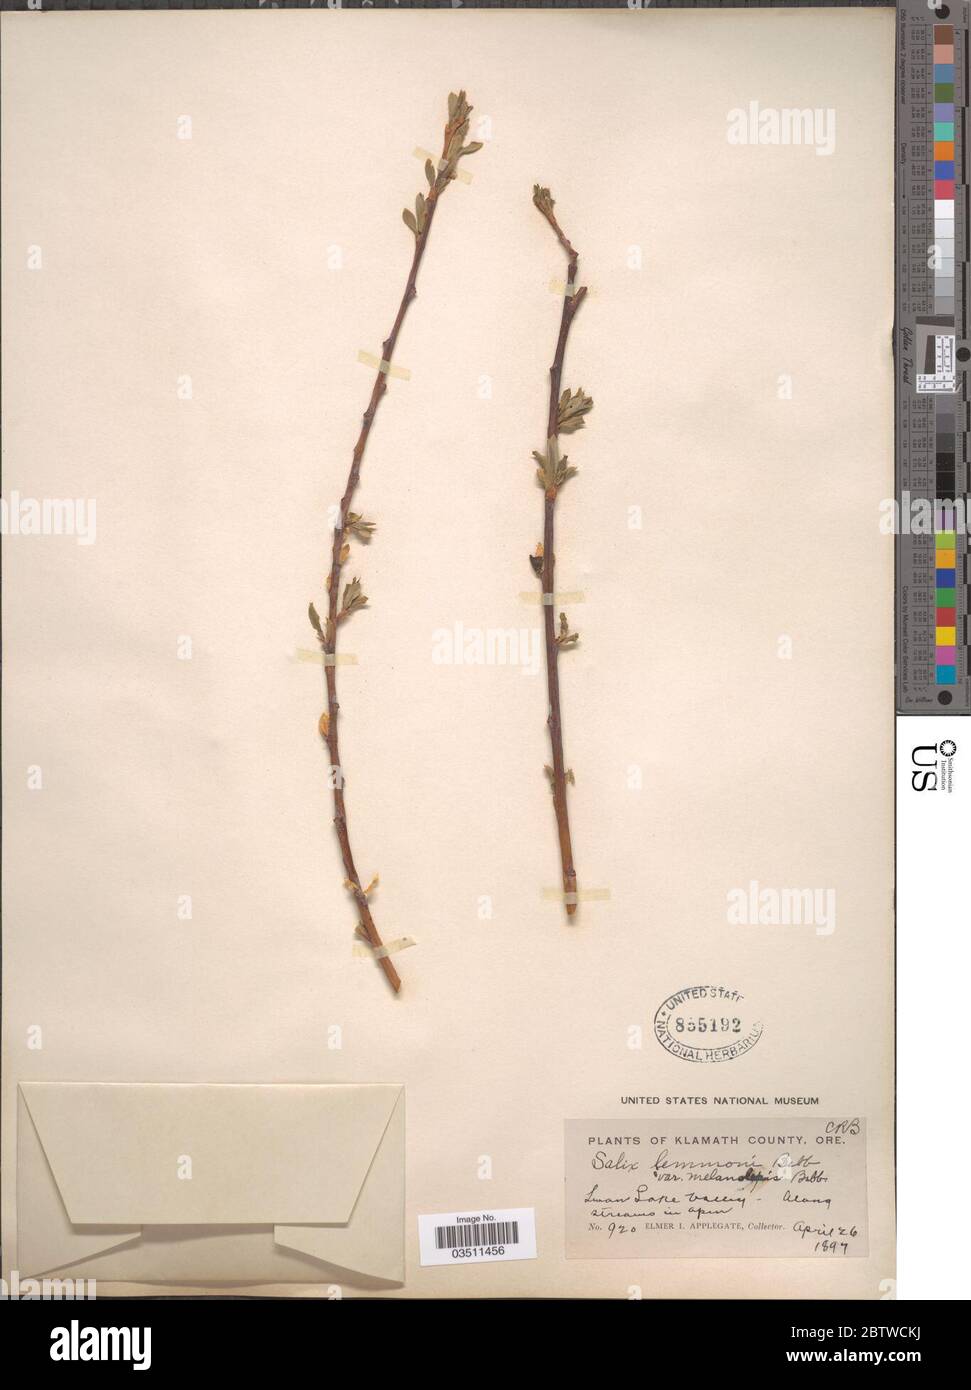 Salix lemmonii Bebb. Stock Photo